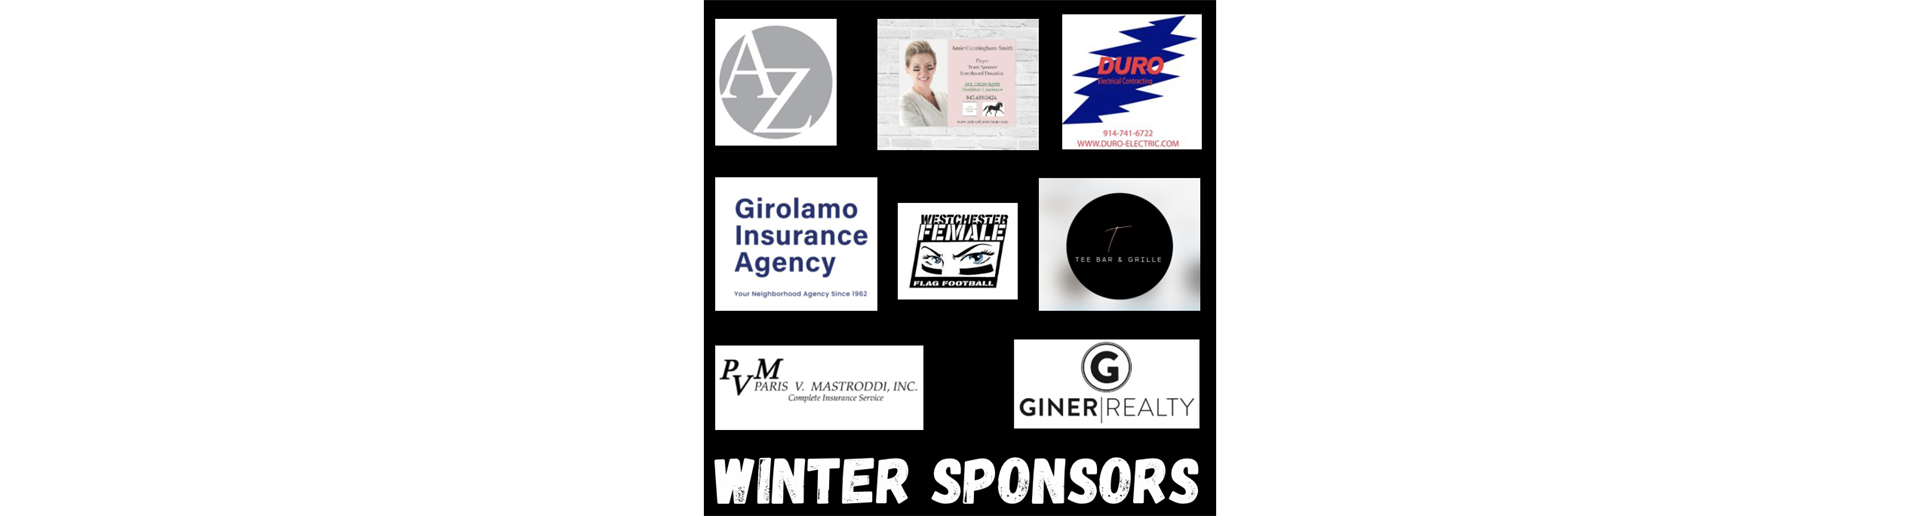 Winter Sponsors